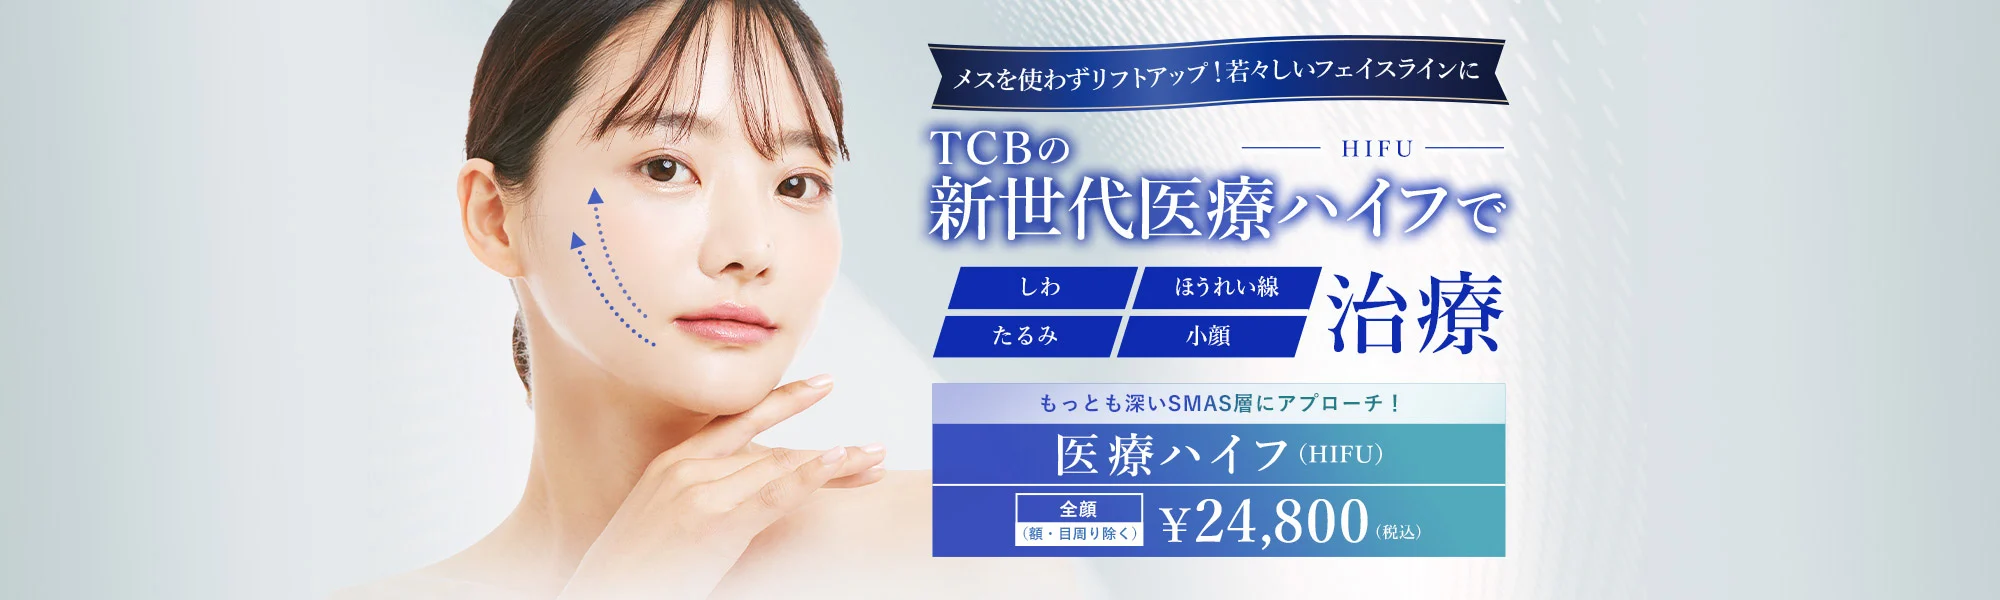 「東京中央美容外科」はハイフの種類が豊富で自由度が高い